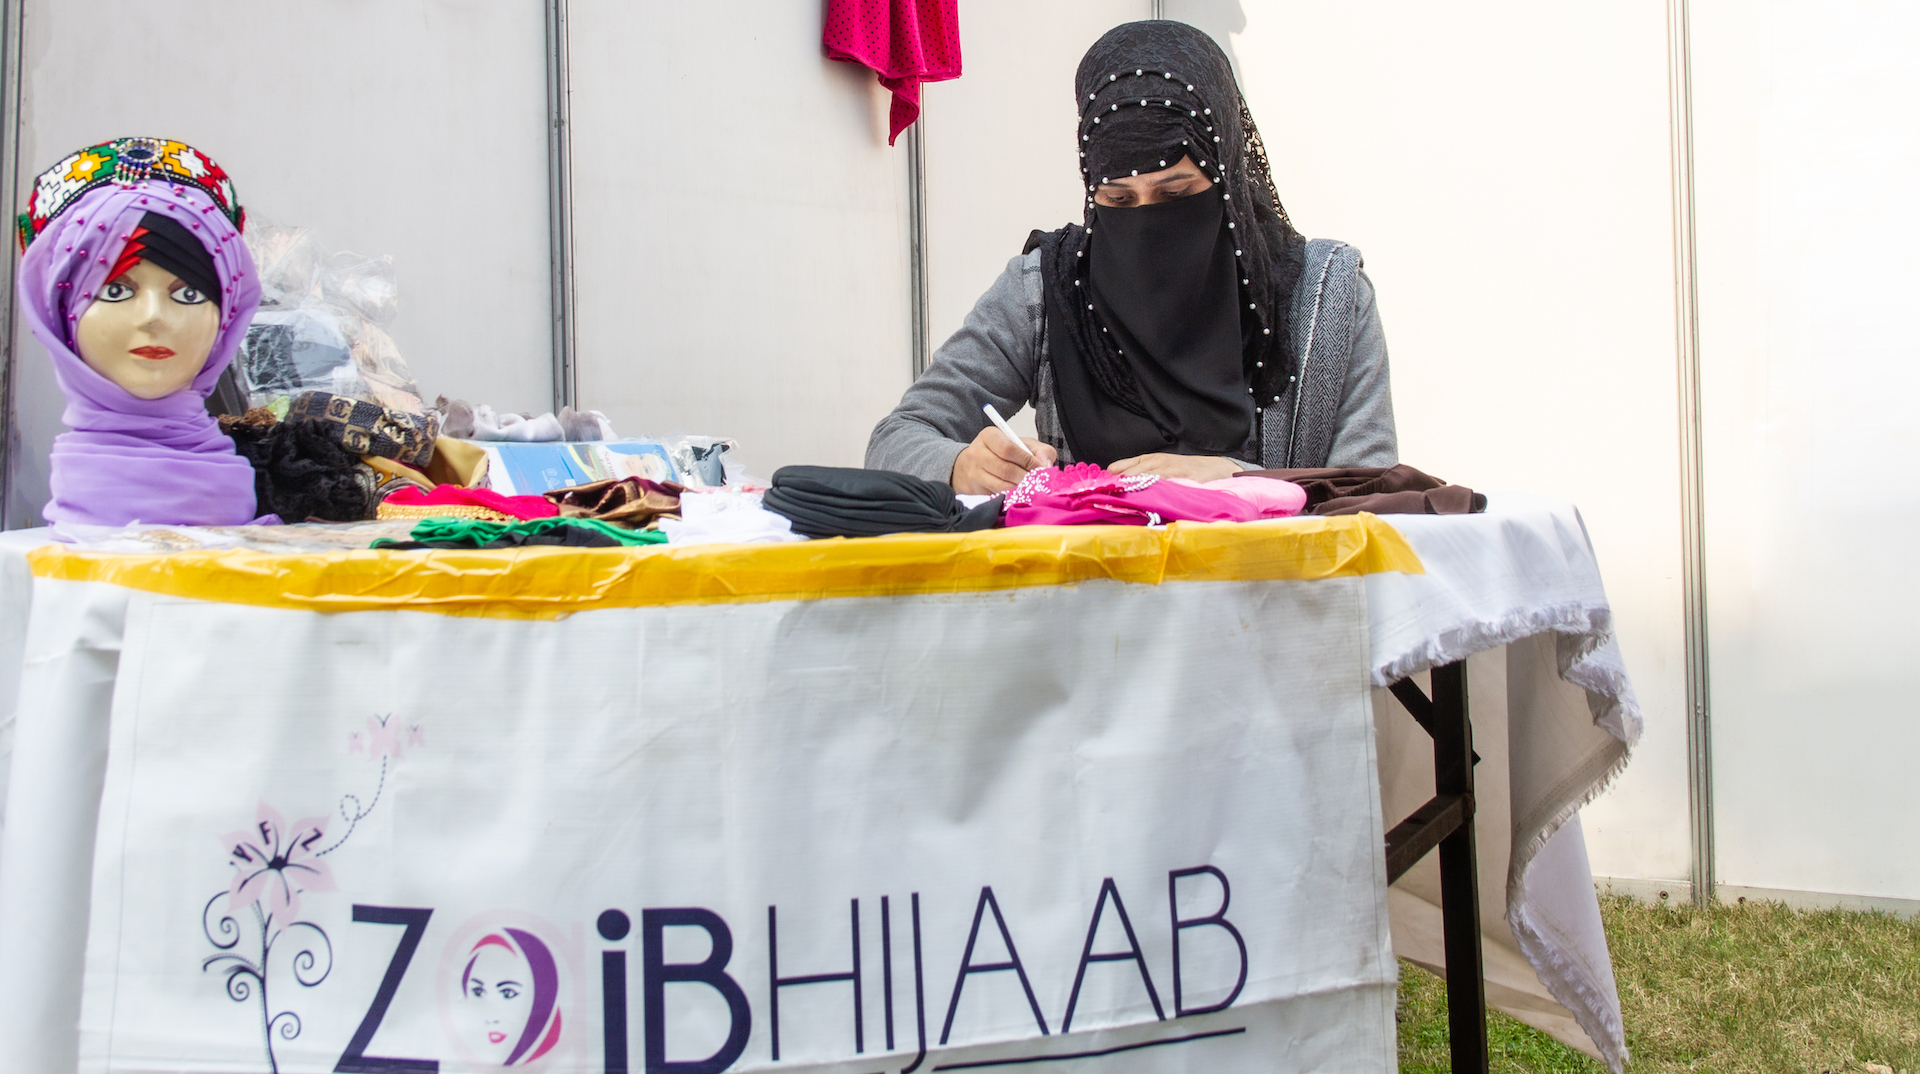 Eine Frau sitzt an einem Tisch. Sie hält einen Stift in der Hand, mit dem sie etwas schreibt. Auf dem Tisch liegen Hijabs in verschiedenen Farben. Auf einem Schild steht der Name ihres Unternehmens: „Zaib Hijaab“.